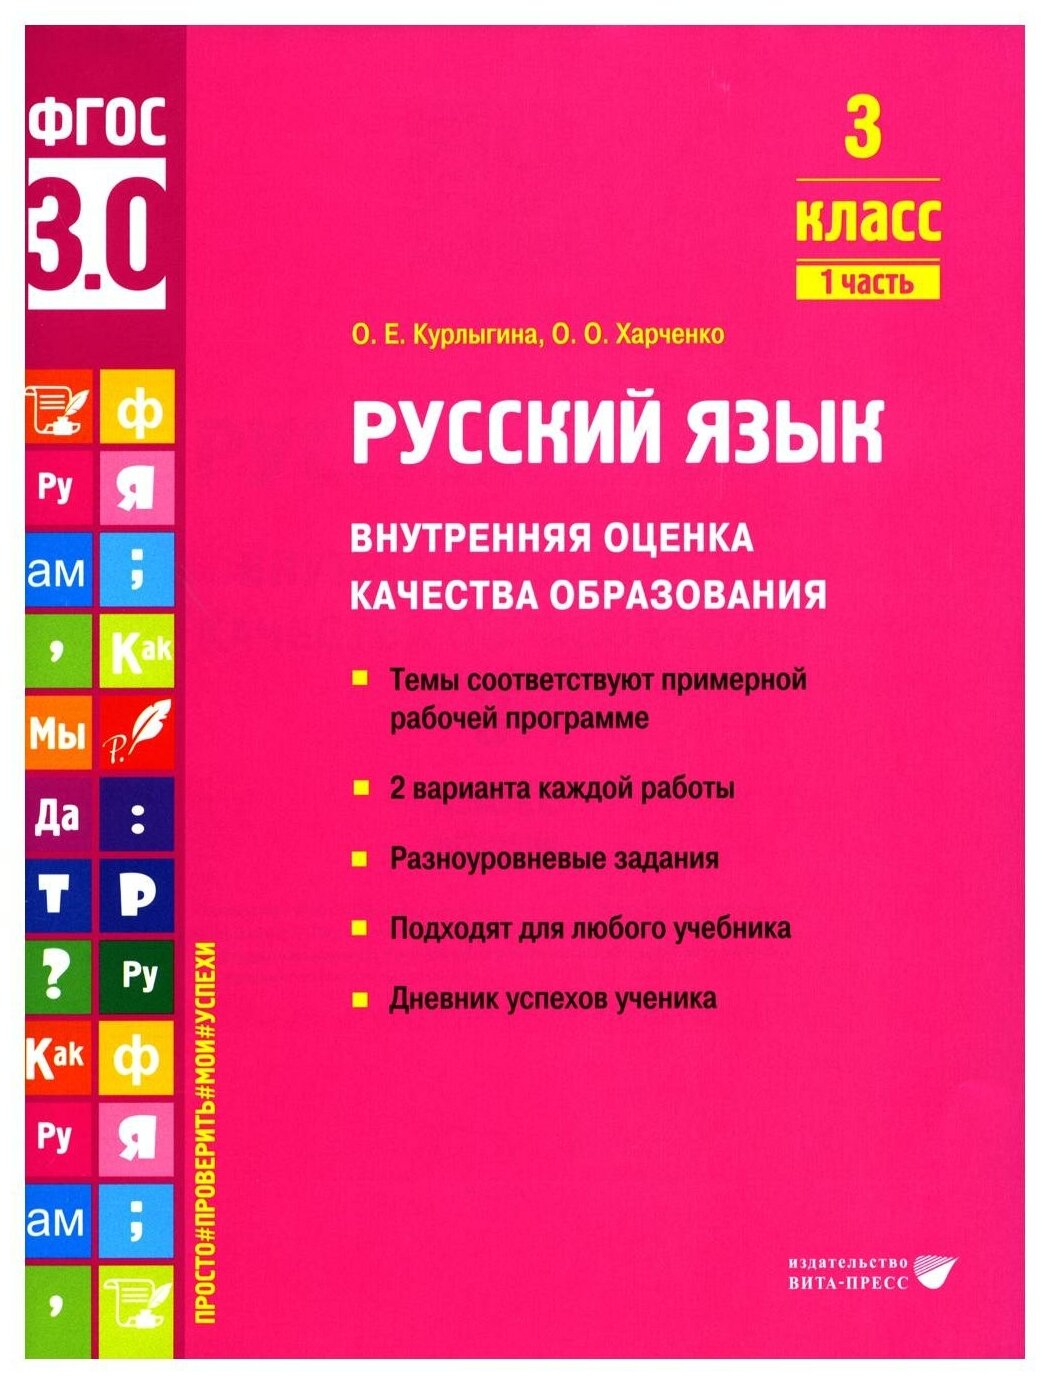 Русский язык воко 3 класс ч.1